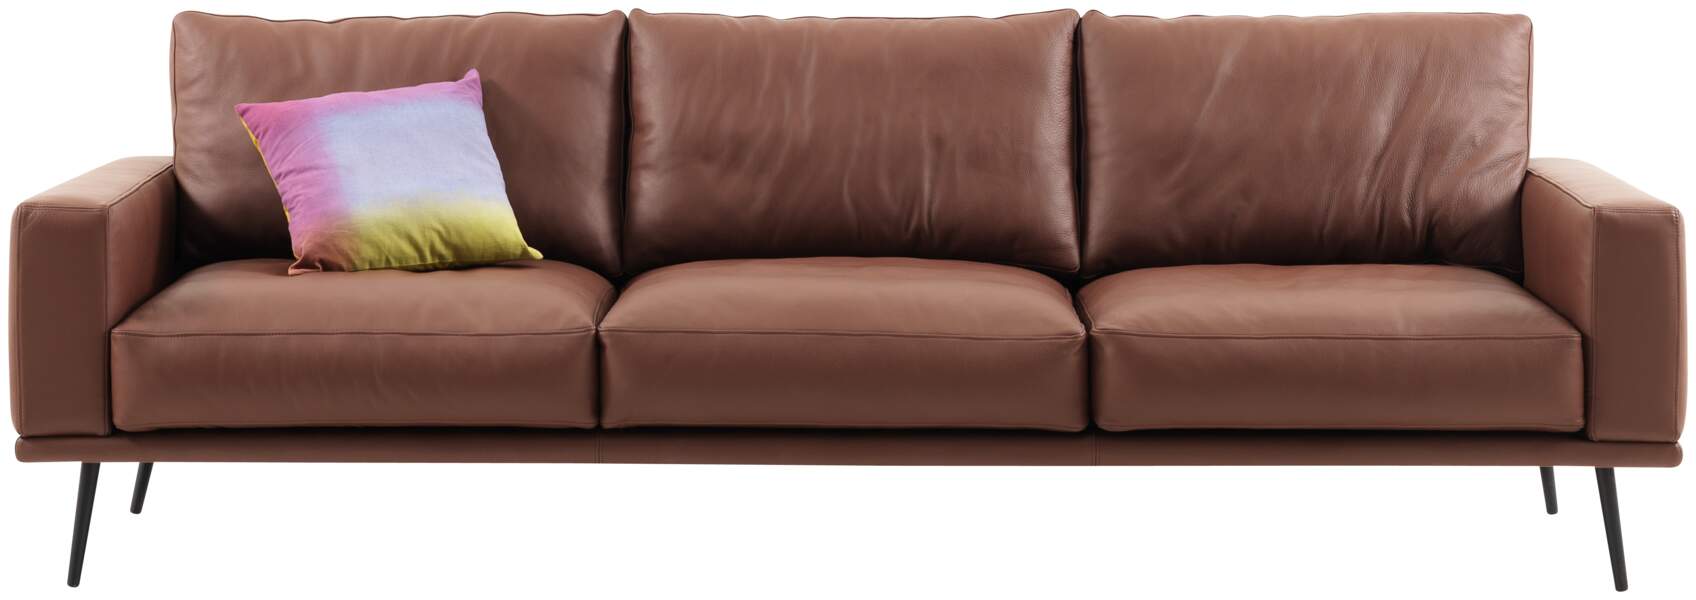 Canapé cuir design